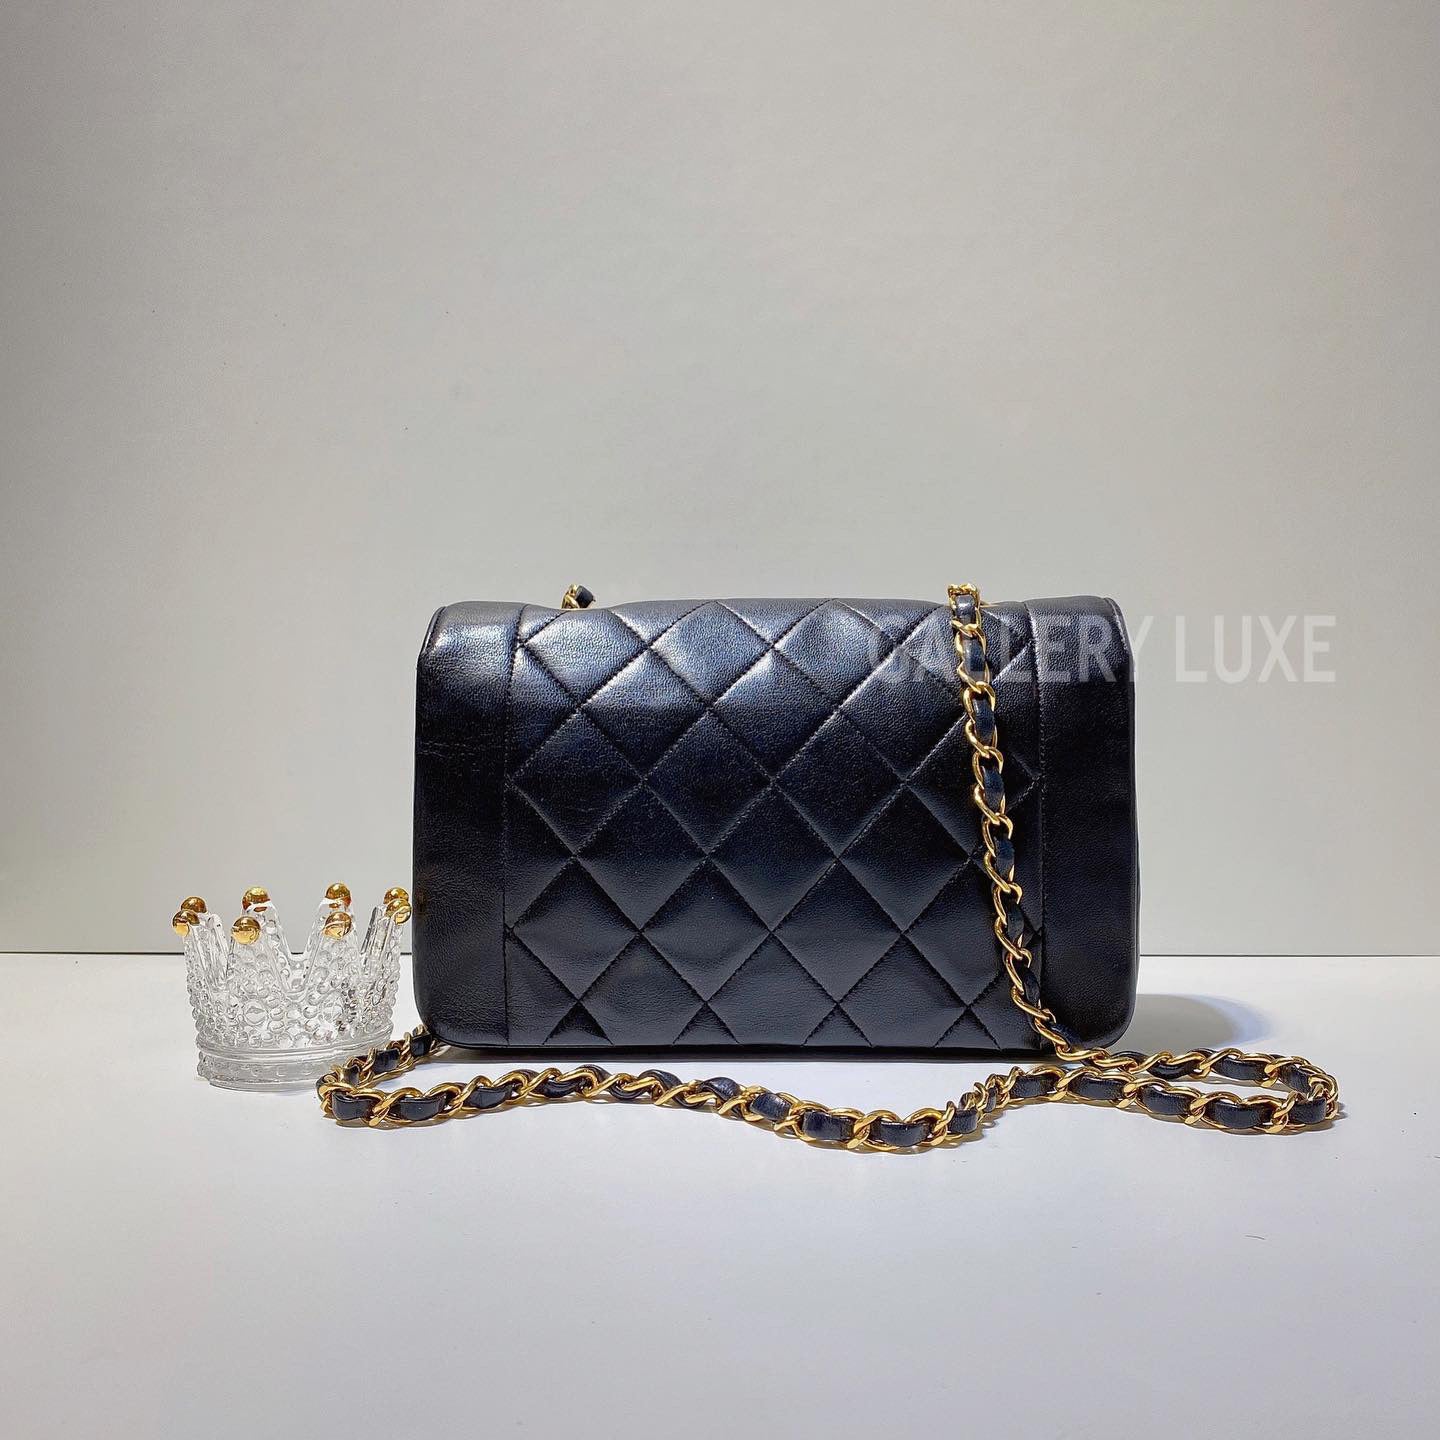 Cra-wallonieShops, Chanel Vintage Handbag 397911